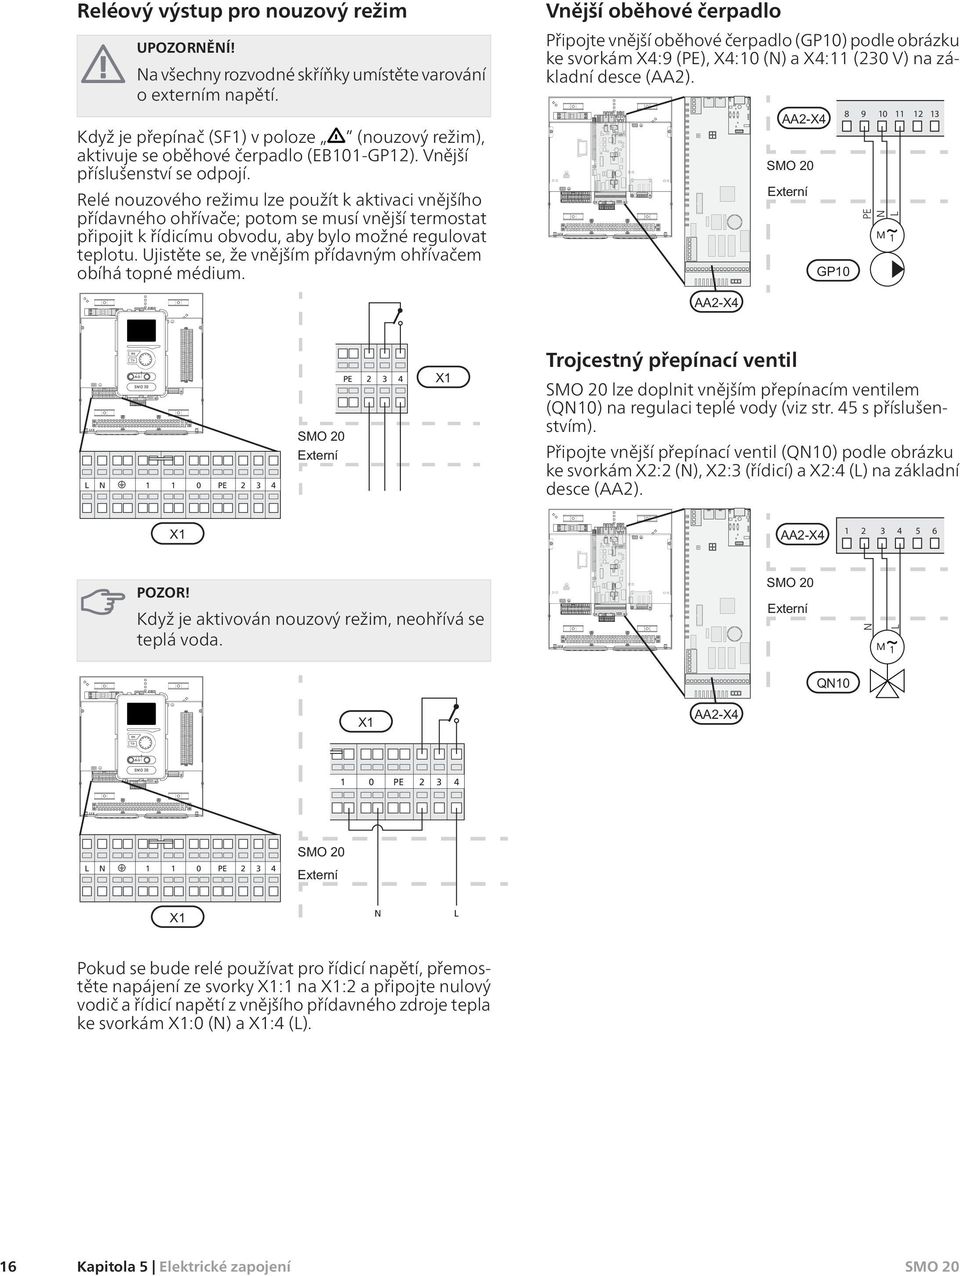 Relé nouzového režimu lze použít k aktivaci vnějšího přídavného ohřívače; potom se musí vnější termostat připojit k řídicímu obvodu, aby bylo možné regulovat teplotu.